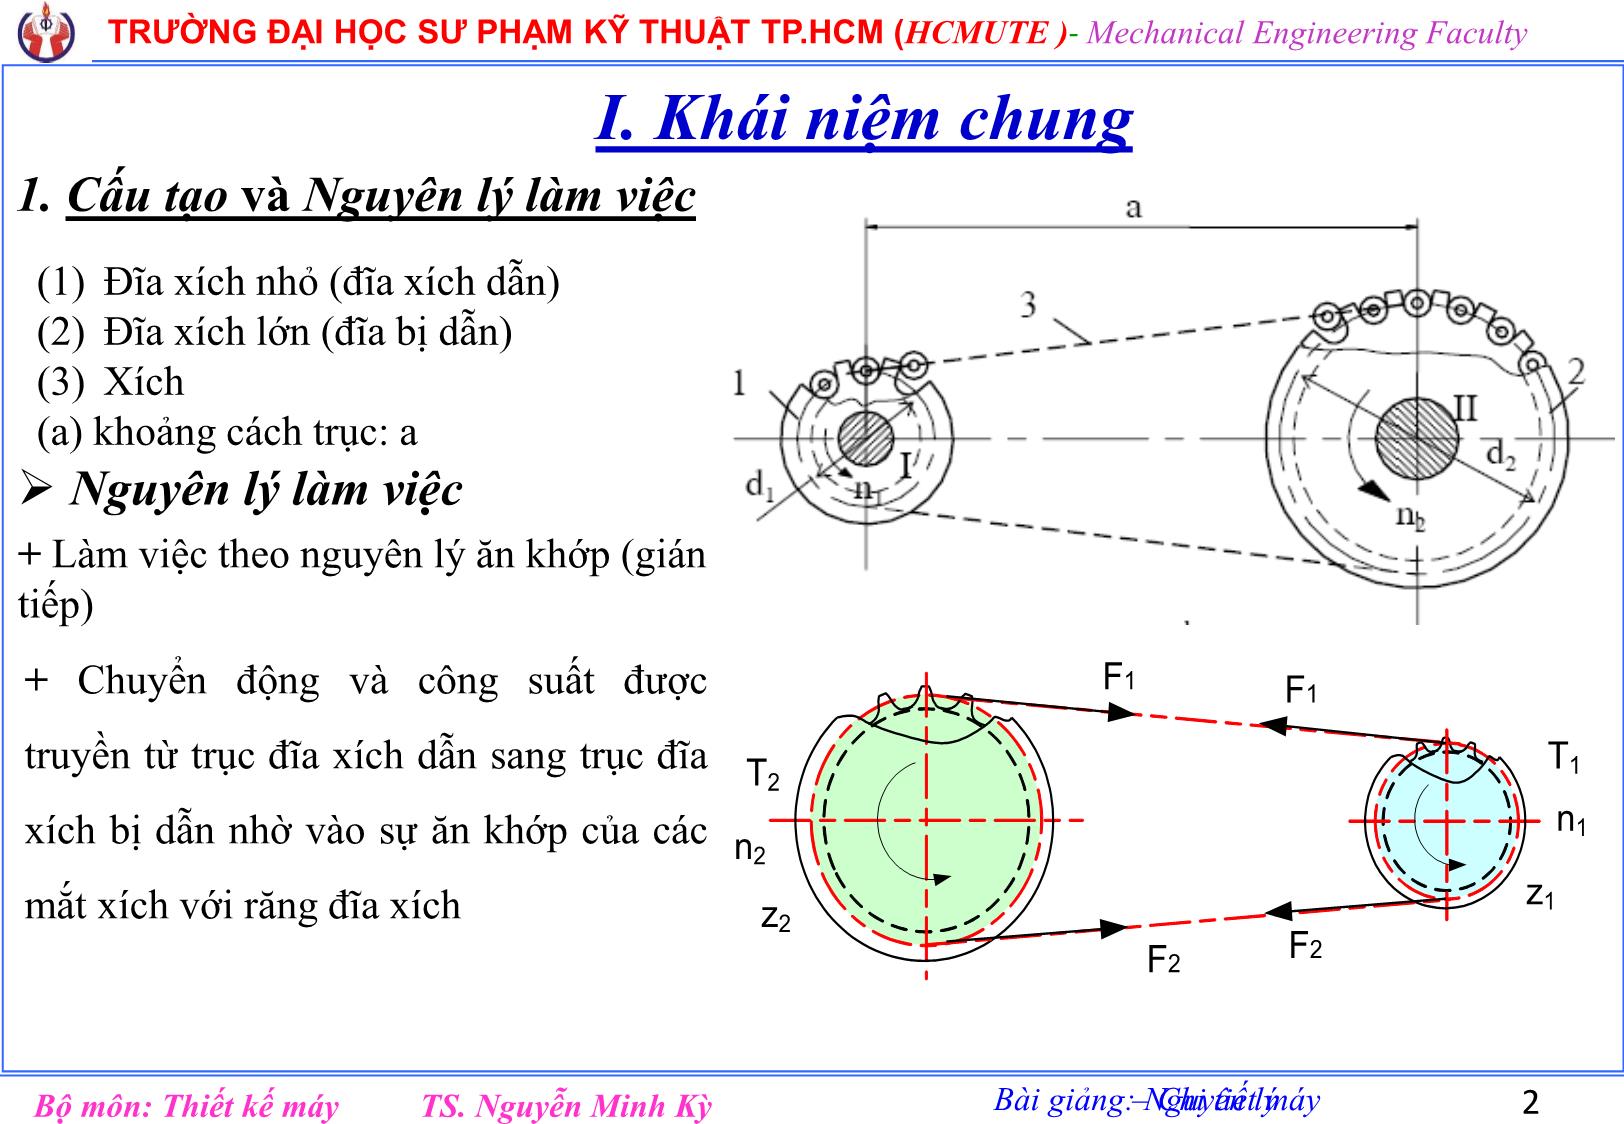 Bài giảng Nguyên lý chi tiết máy - Chương 9: Truyền động xích - Nguyễn Minh Kỳ trang 2